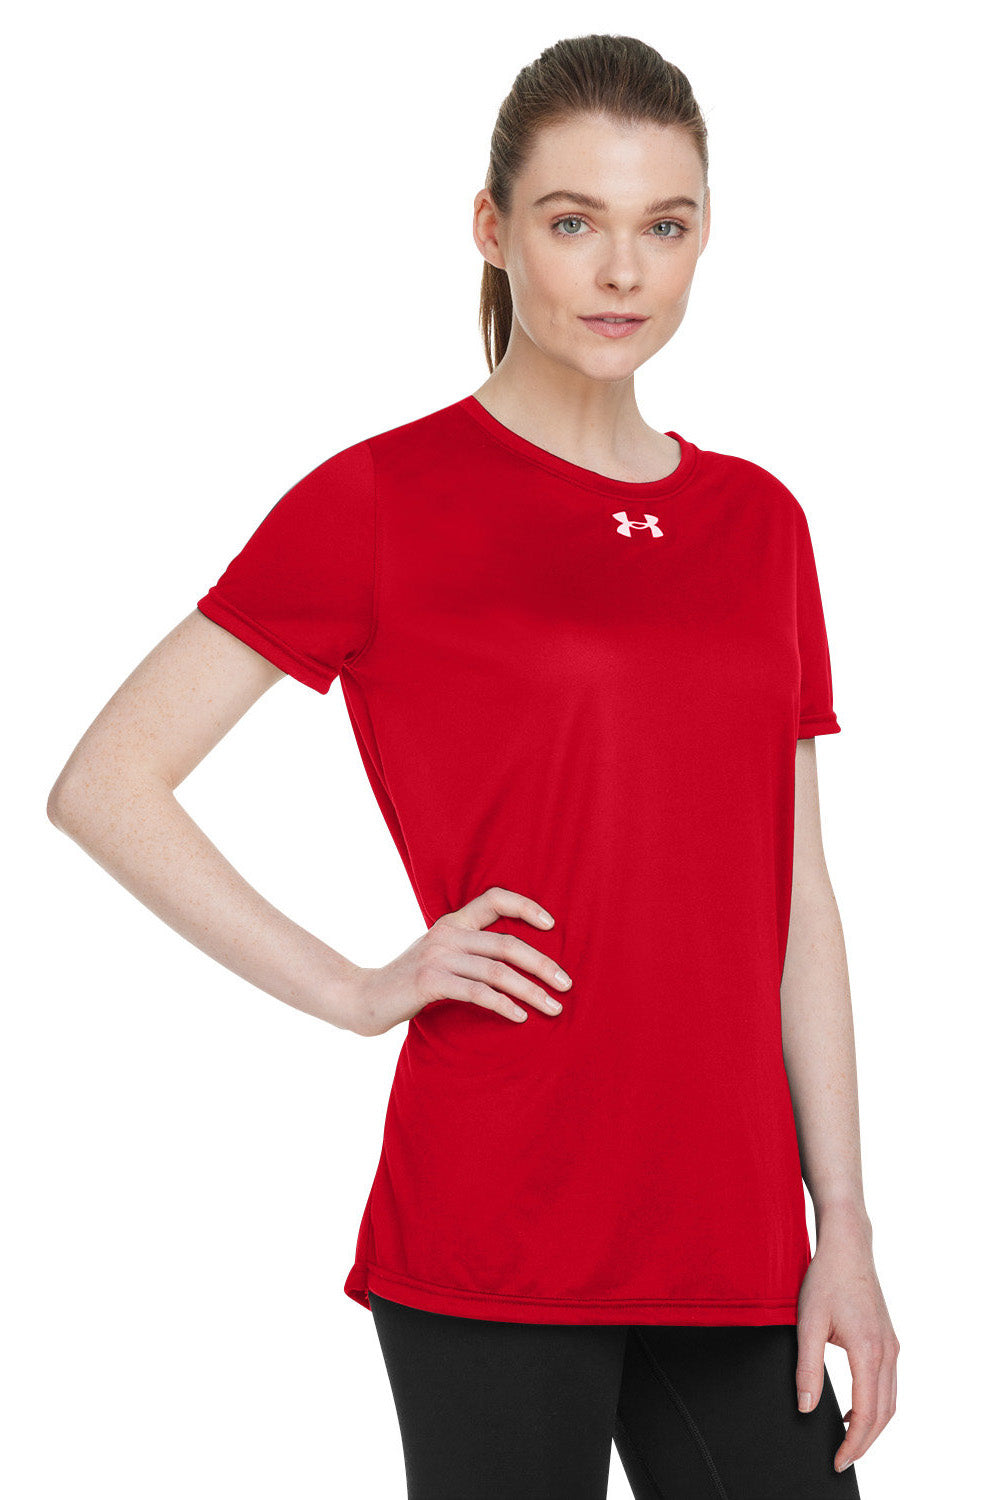 Under Armour 1376847 Womens Team Tech Moisture Wicking Short Sleeve Crewneck T-Shirt Red Model 3Q